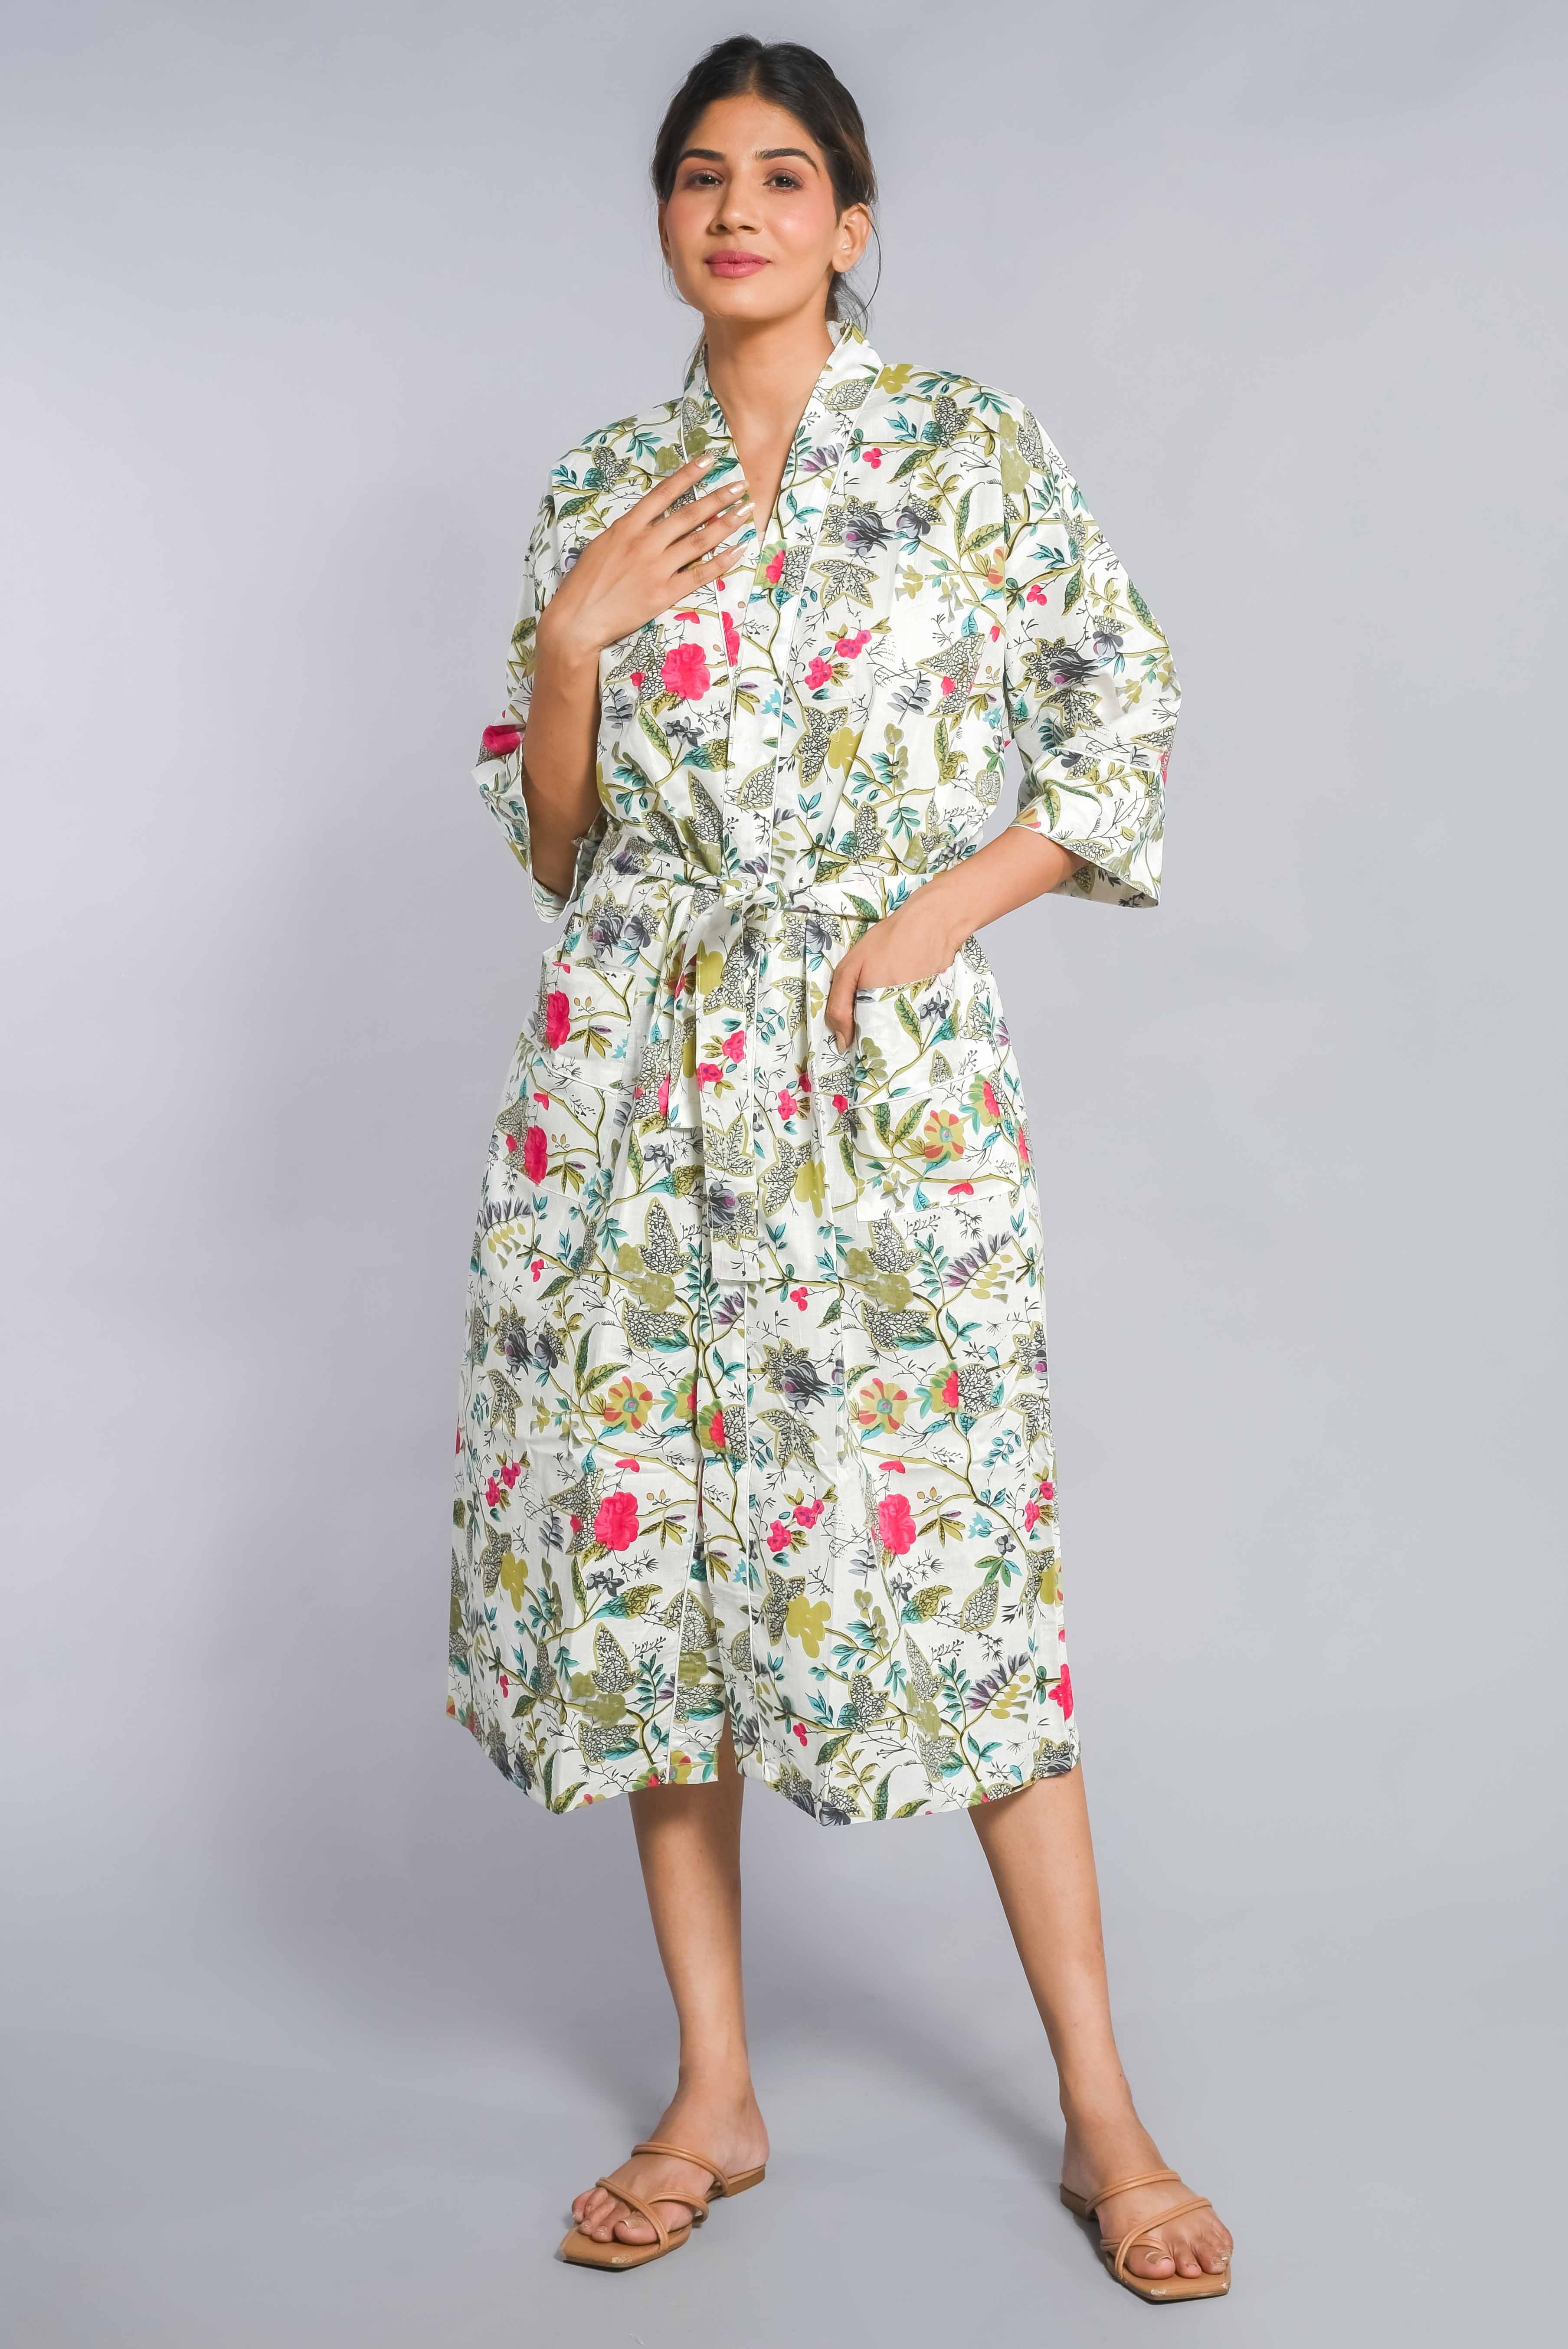 Floral Pattern Kimono Robe Long Bathrobe For Women (Multi)-KM-154